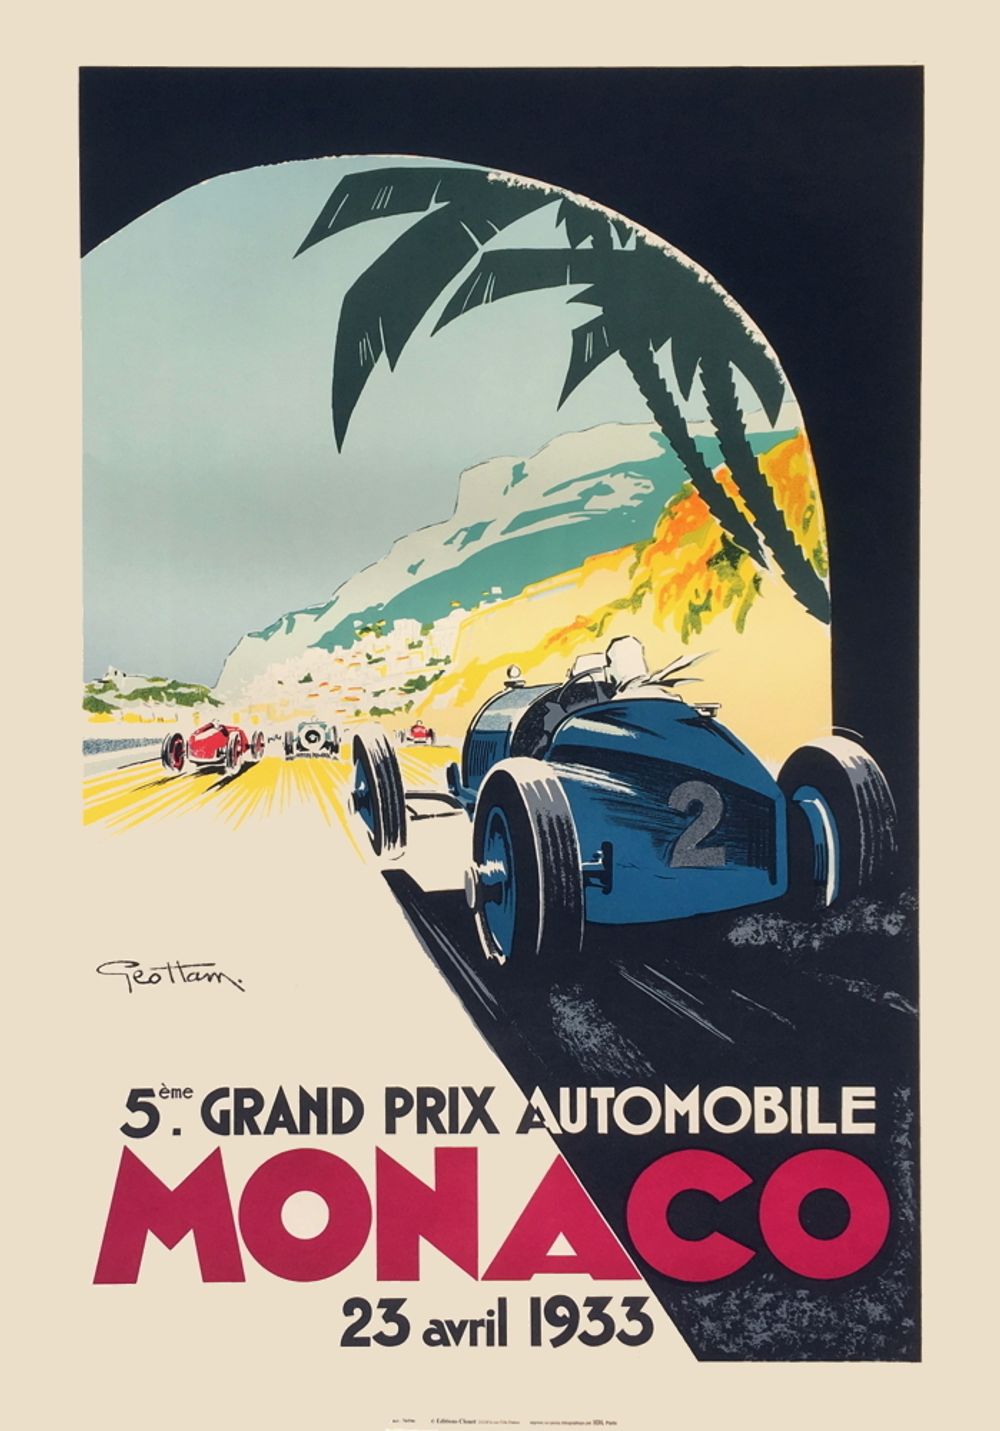 Grand Prix de Monaco 1933